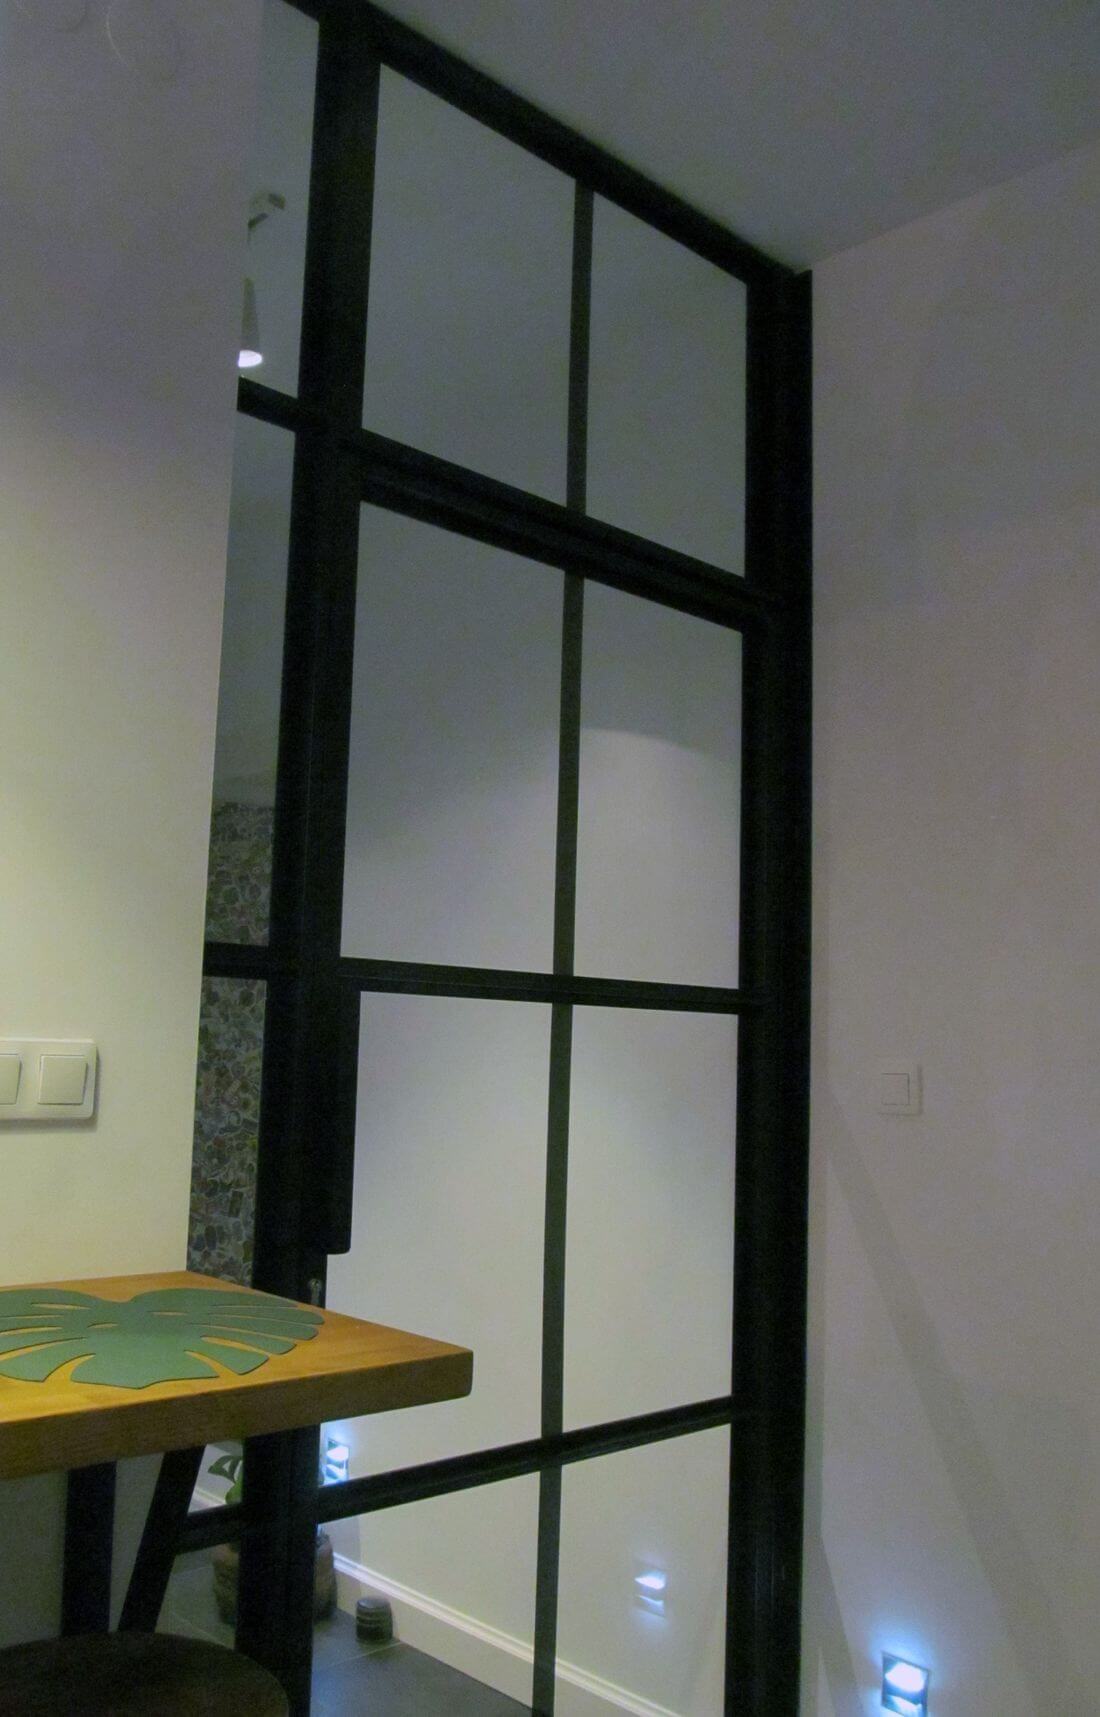 Mieszkanie Loft - Warszawa Praga – Loftowe drzwi metalowo-szklane zamykane na klucz w przedsionku mieszkania